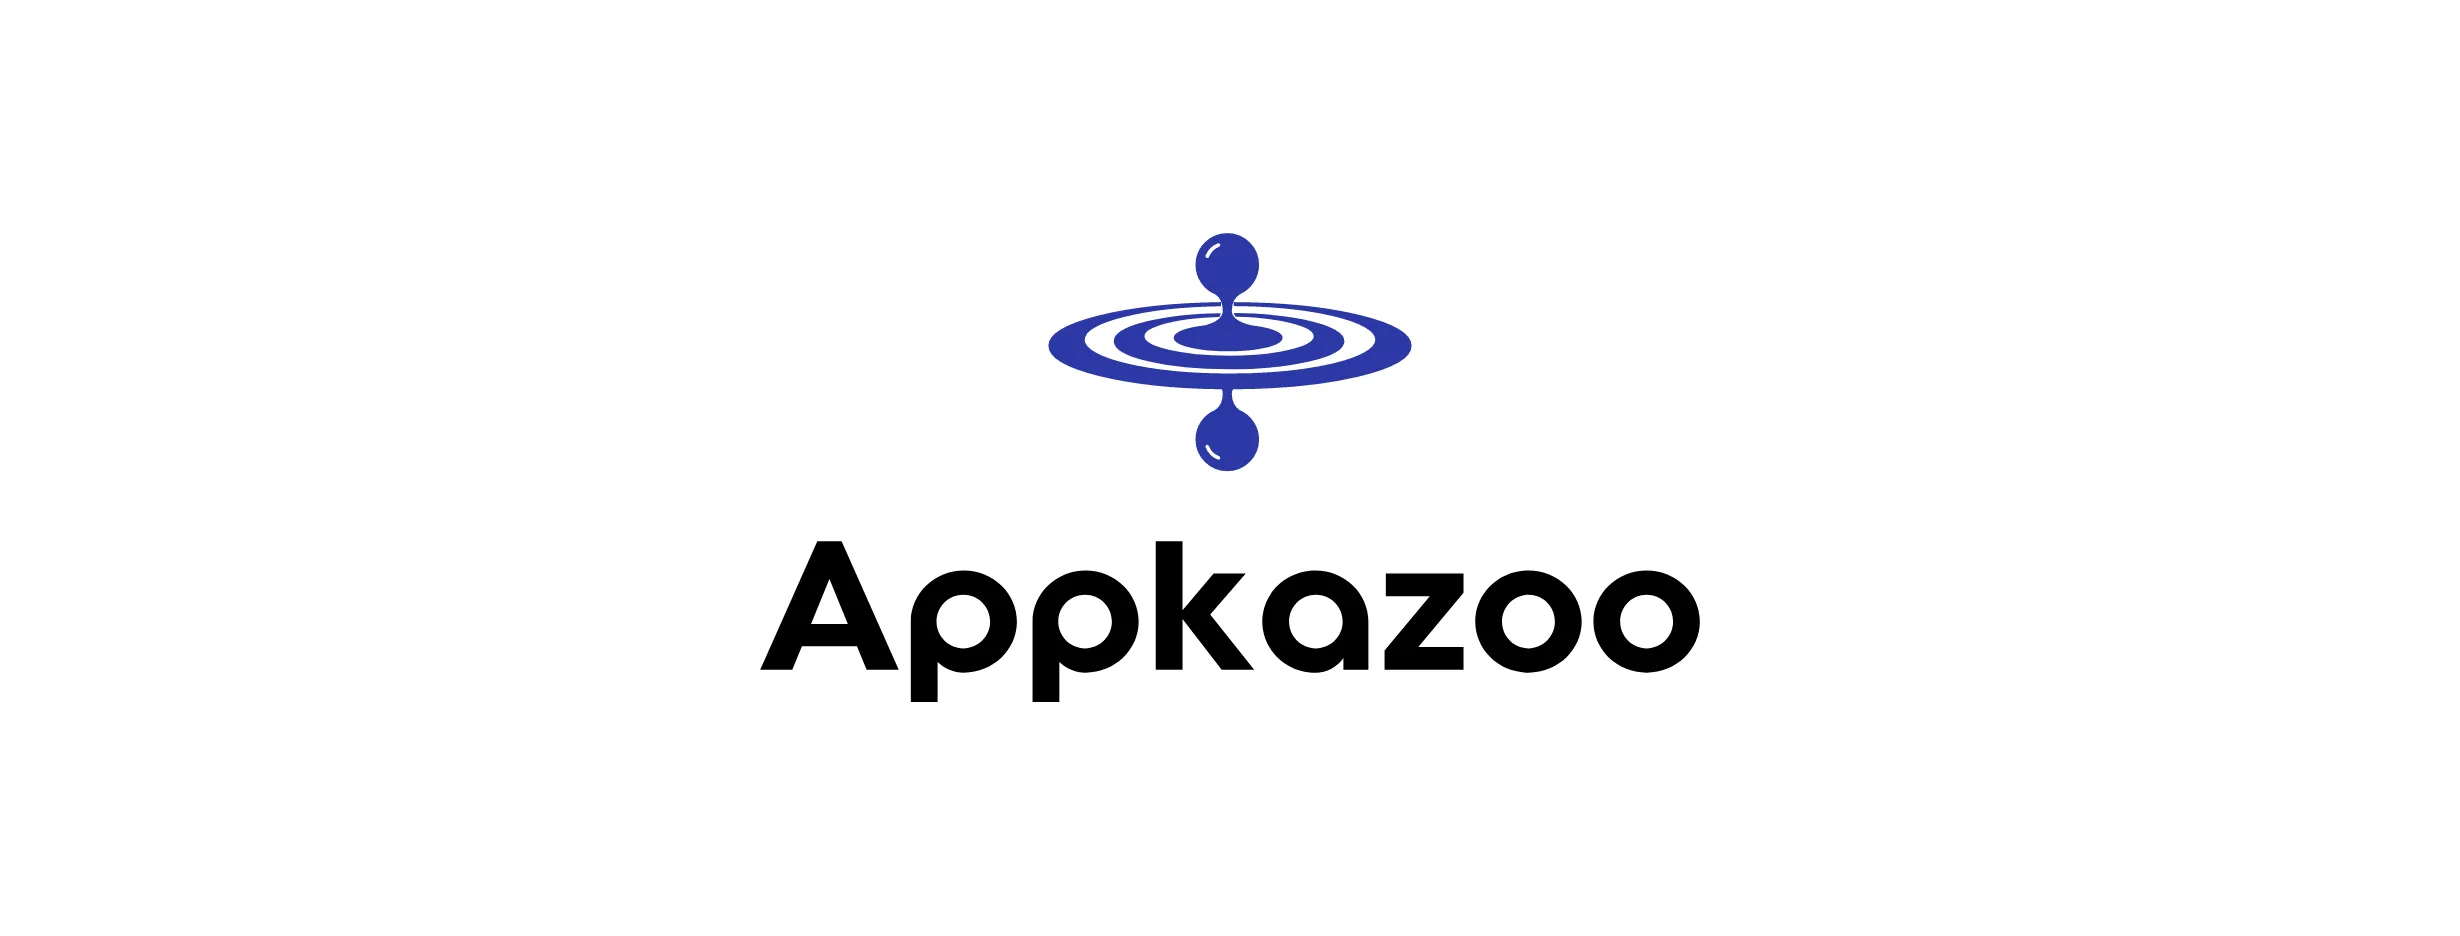 RepKazoo Logo